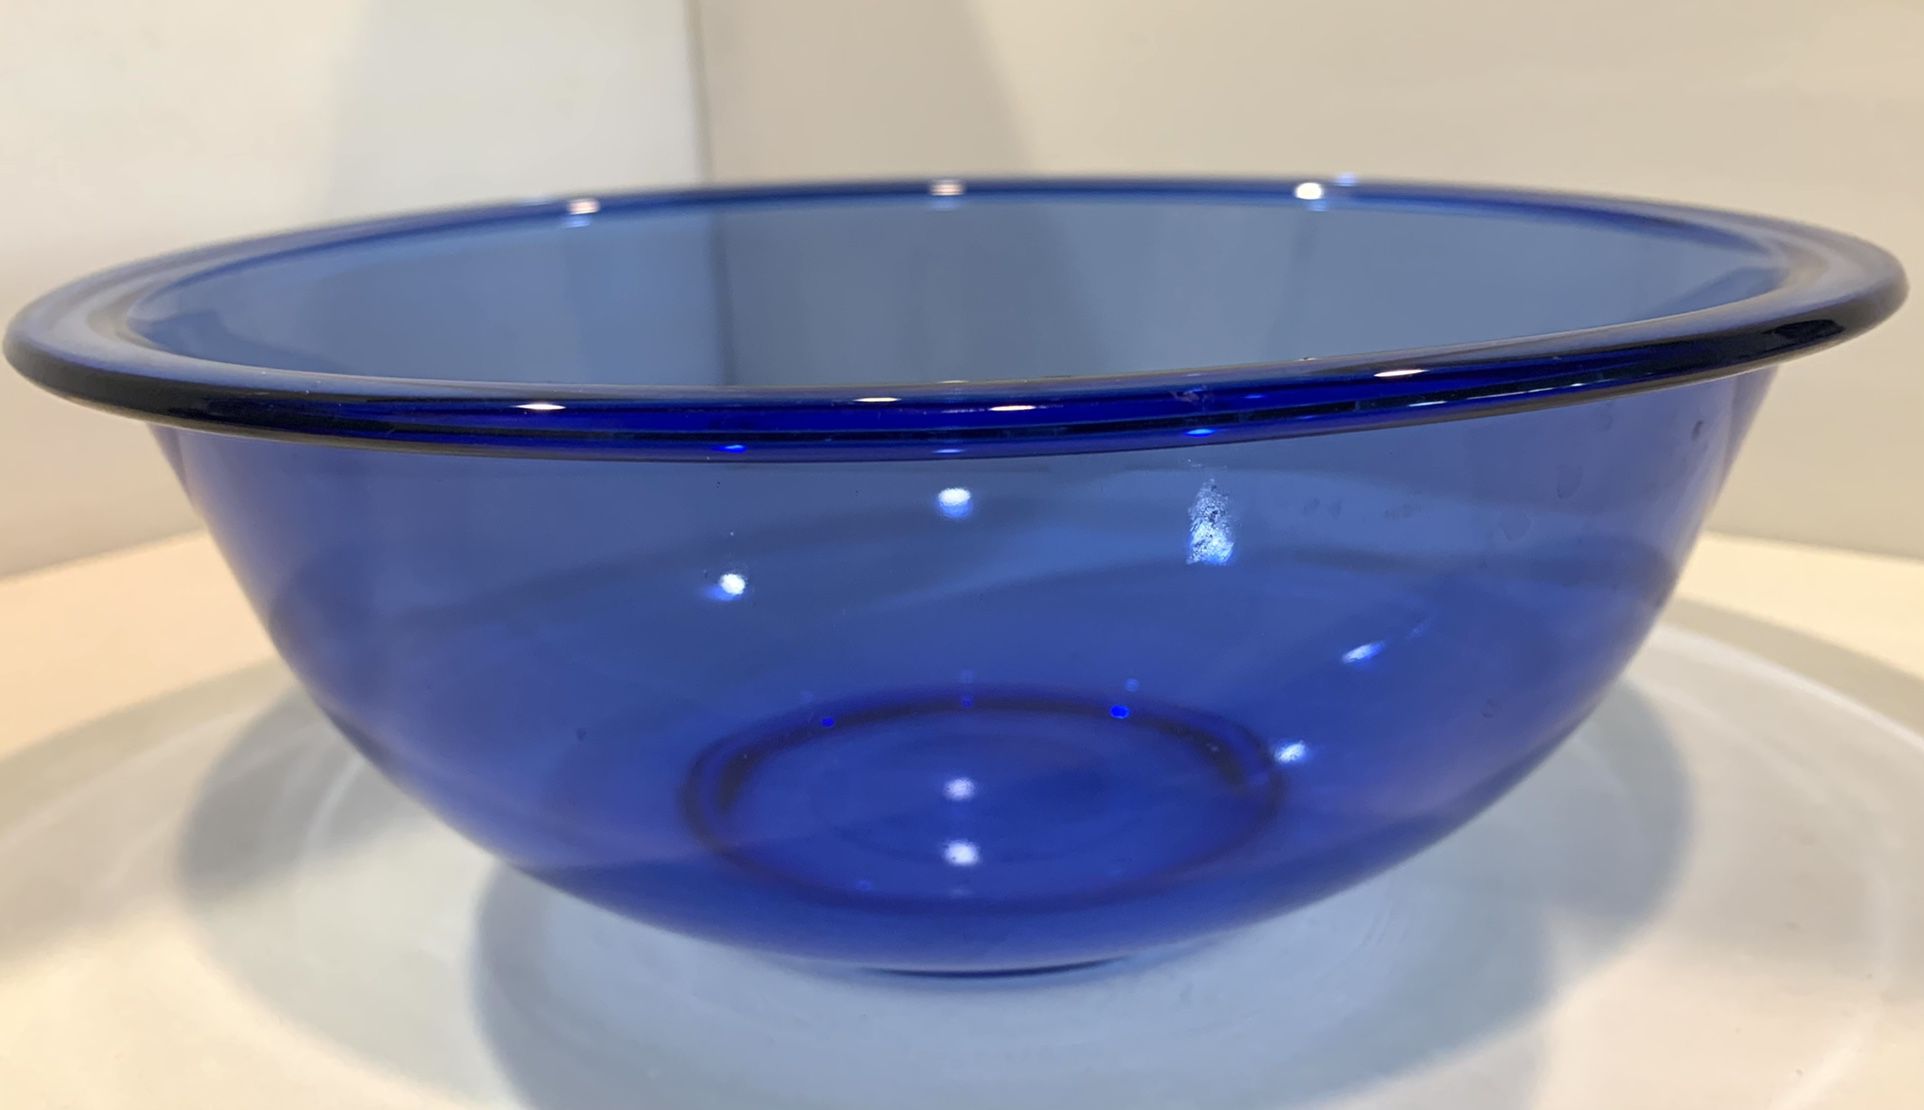  Vintage Pyrex Cobalt Blue Glass Mixing Bowl #325 2.5 Lt (2 Available)